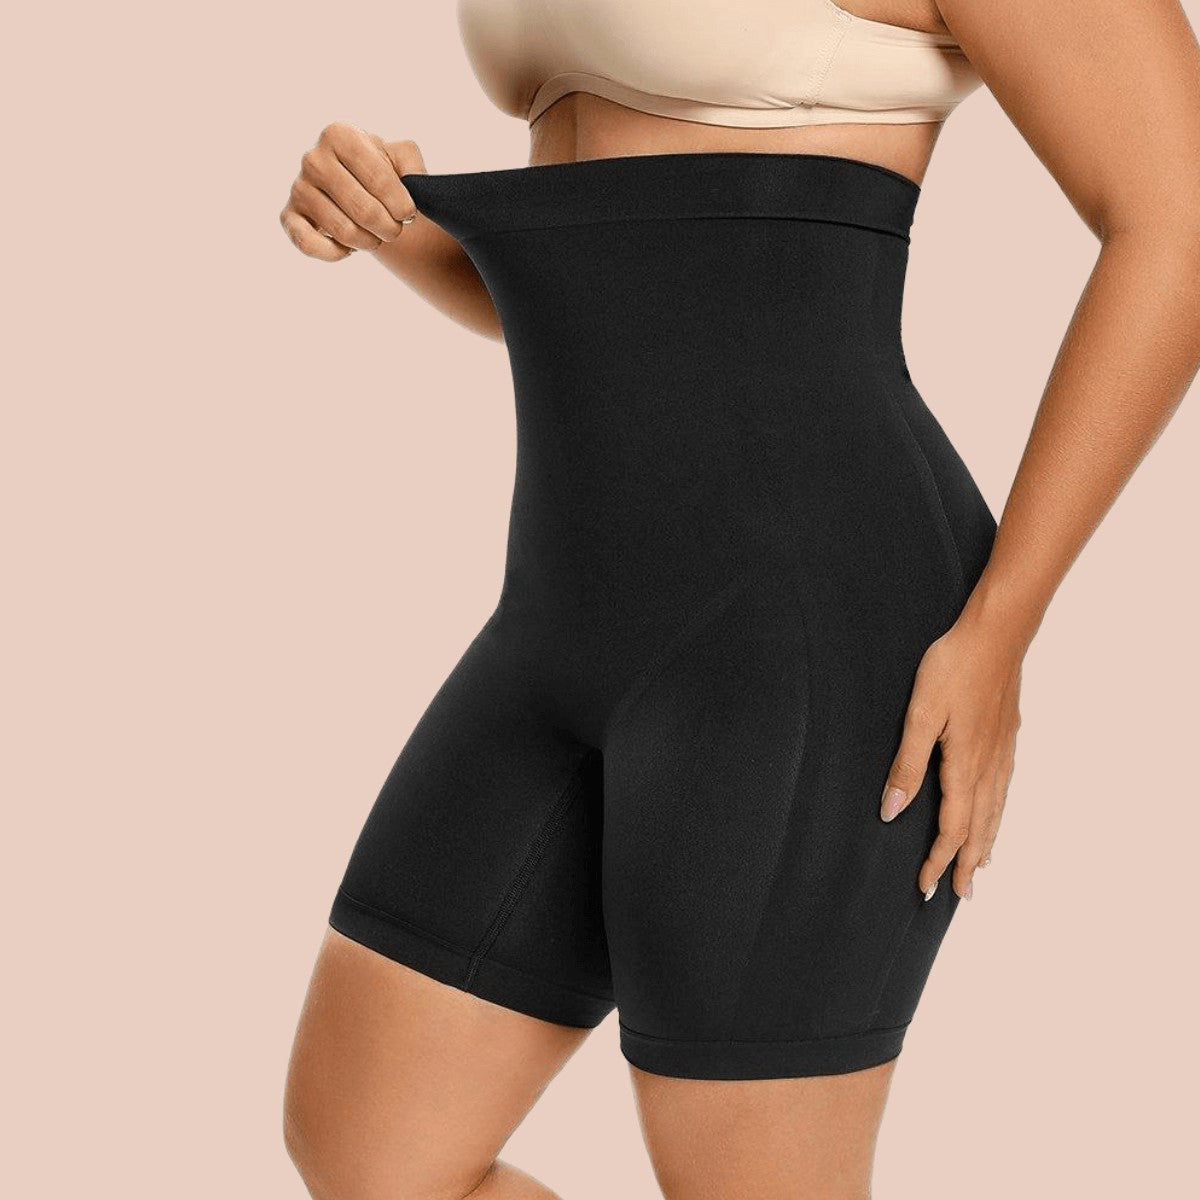 SHAPERX Womens Underwear Cotton Briefs - High Waist Tummy Control Panties  for Women Postpartum Regular Multicolor Underwear Soft Pack of 4